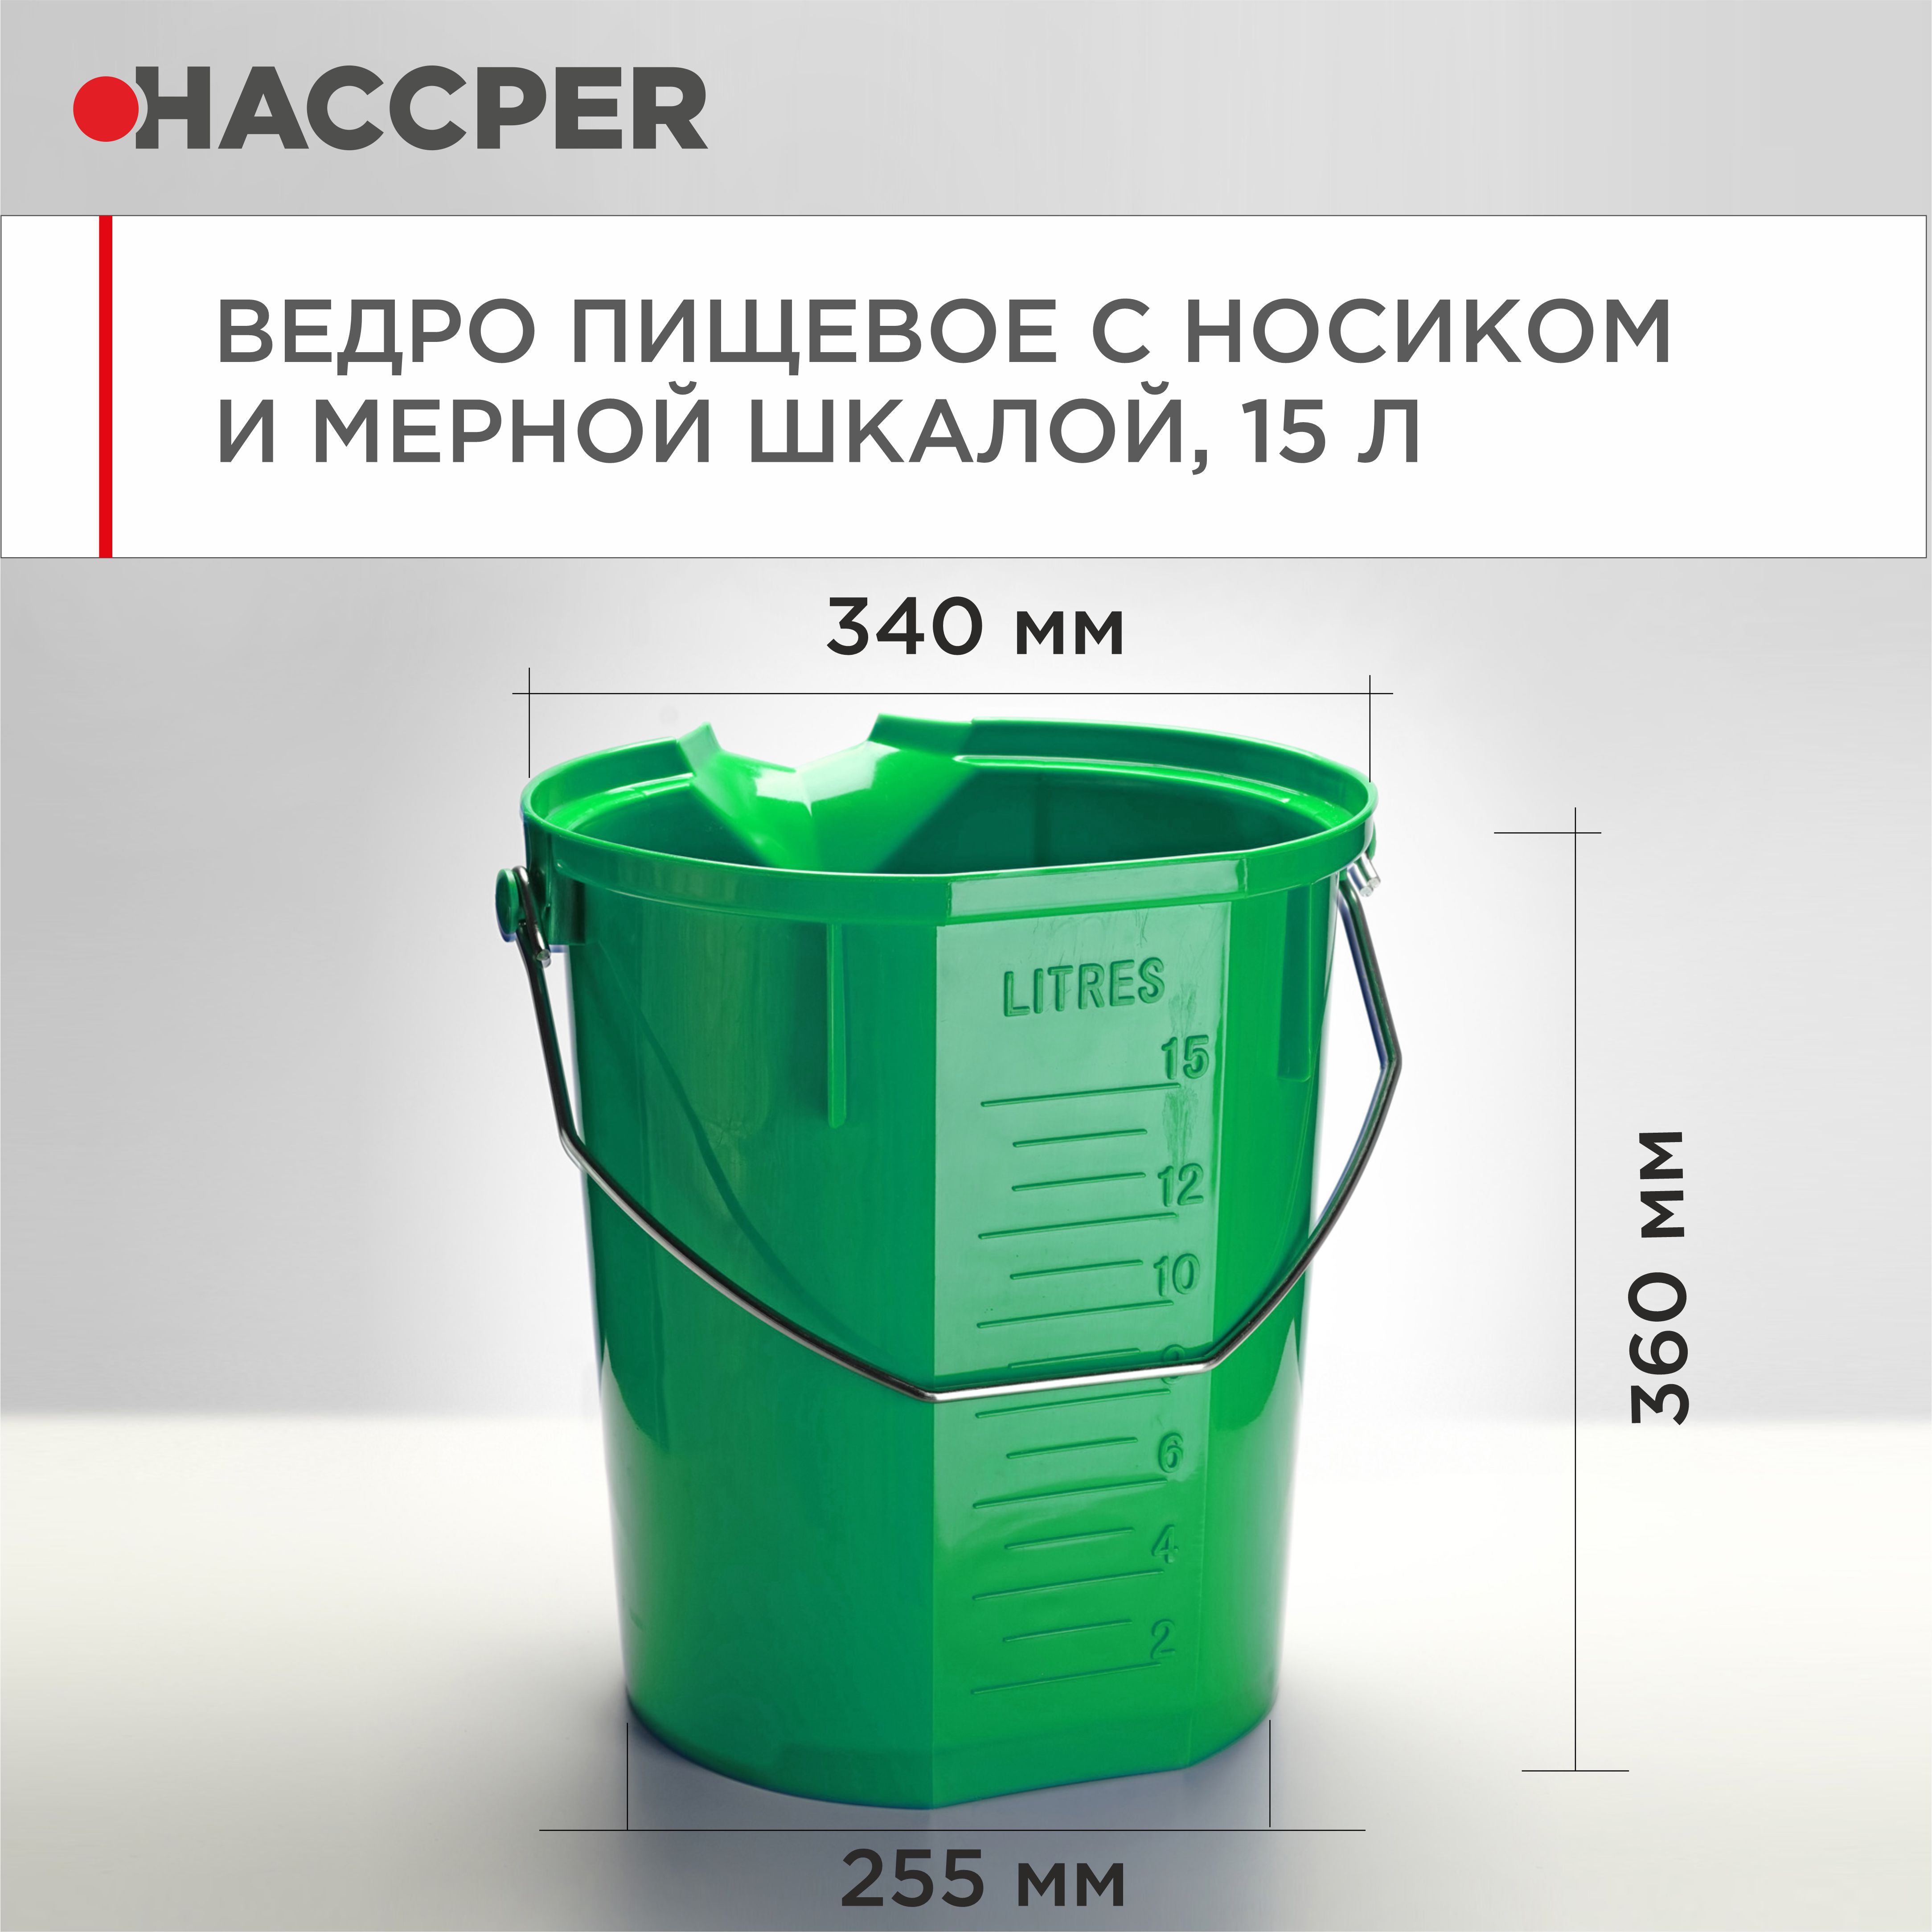 Ведро пищевое HACCPER с носиком и мерной шкалой, 15л, зеленое